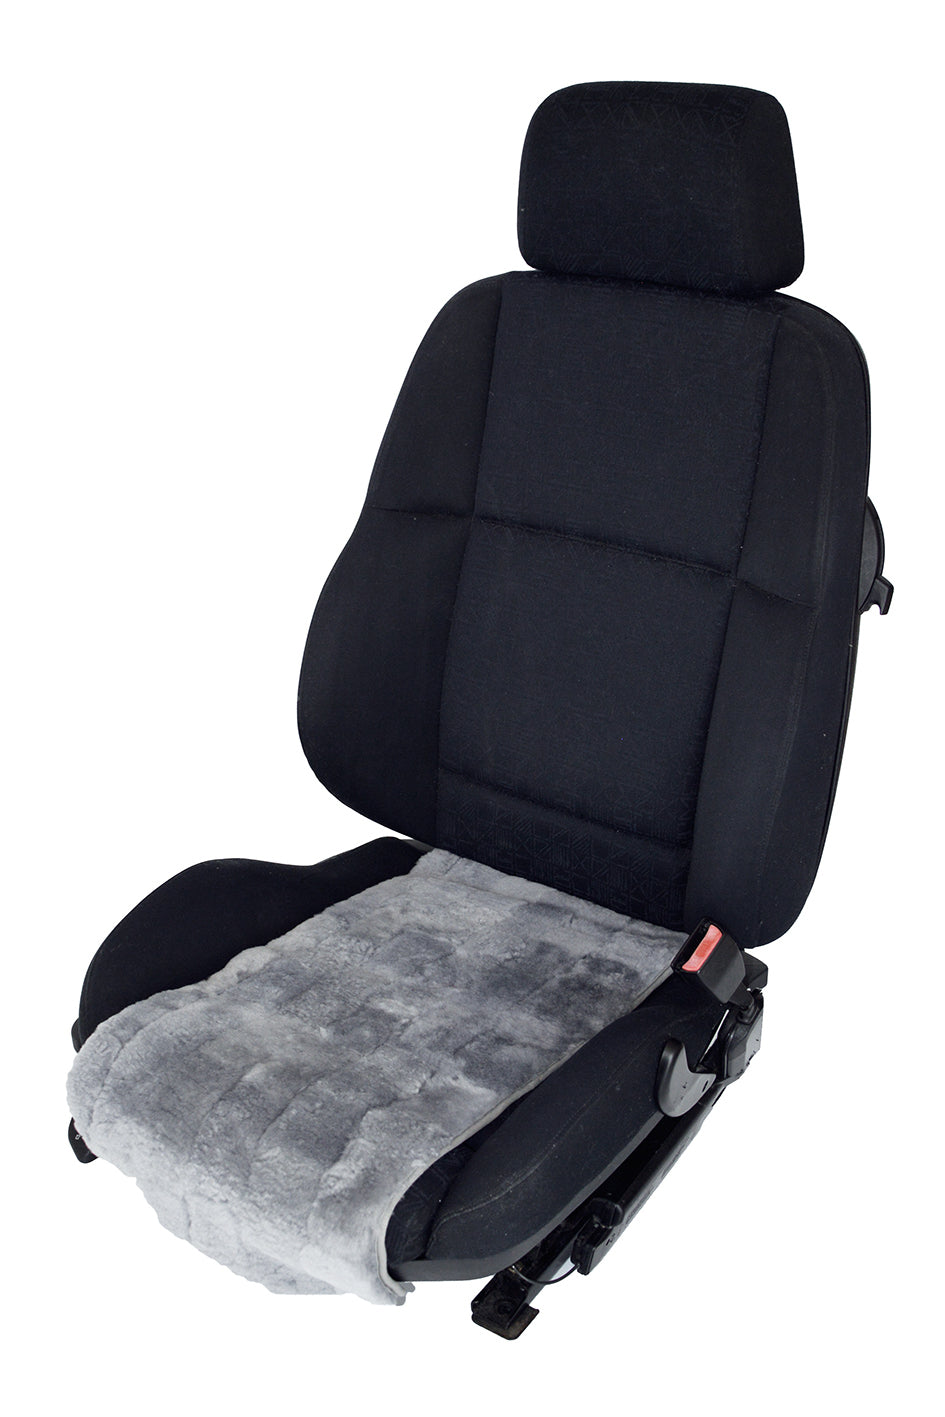 Luxus Auto Sitzbezug Sitzbezüge Schonbezüge Schonbezug Set Grau passend für  Ford